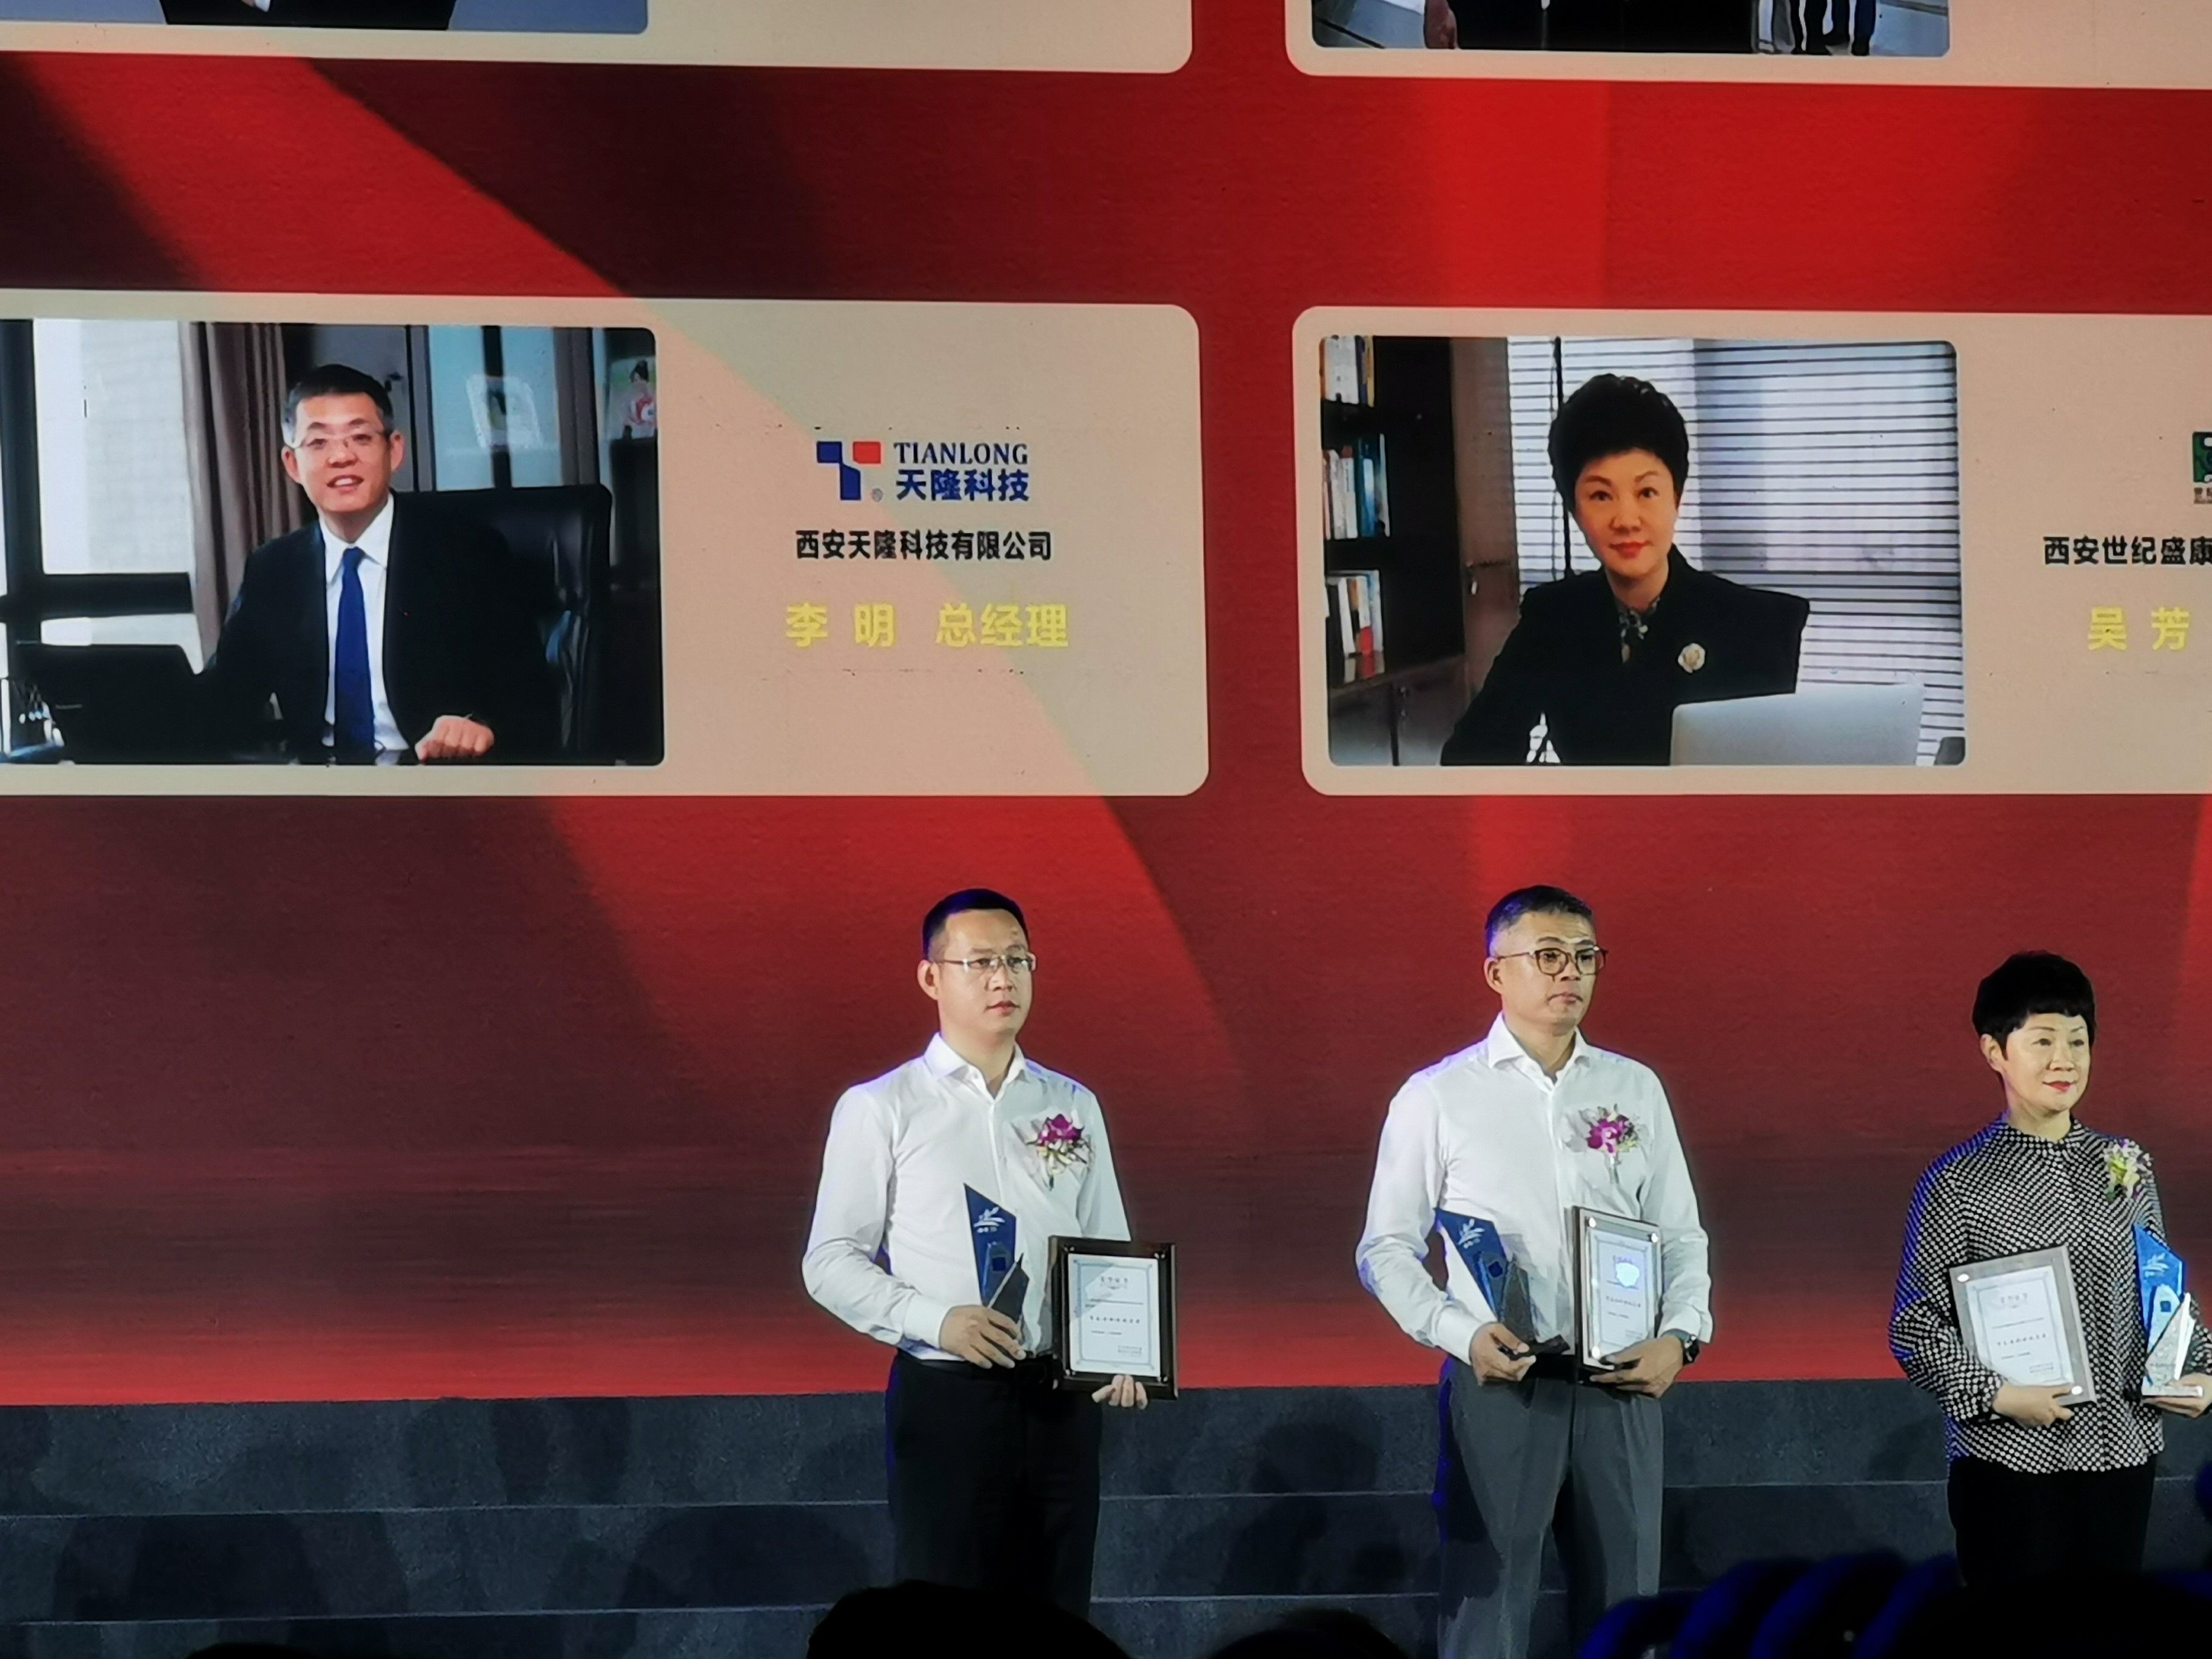 【喜訊】西安“市長特別獎” 提名獎｜天隆科技總經理李明先生喜獲殊榮